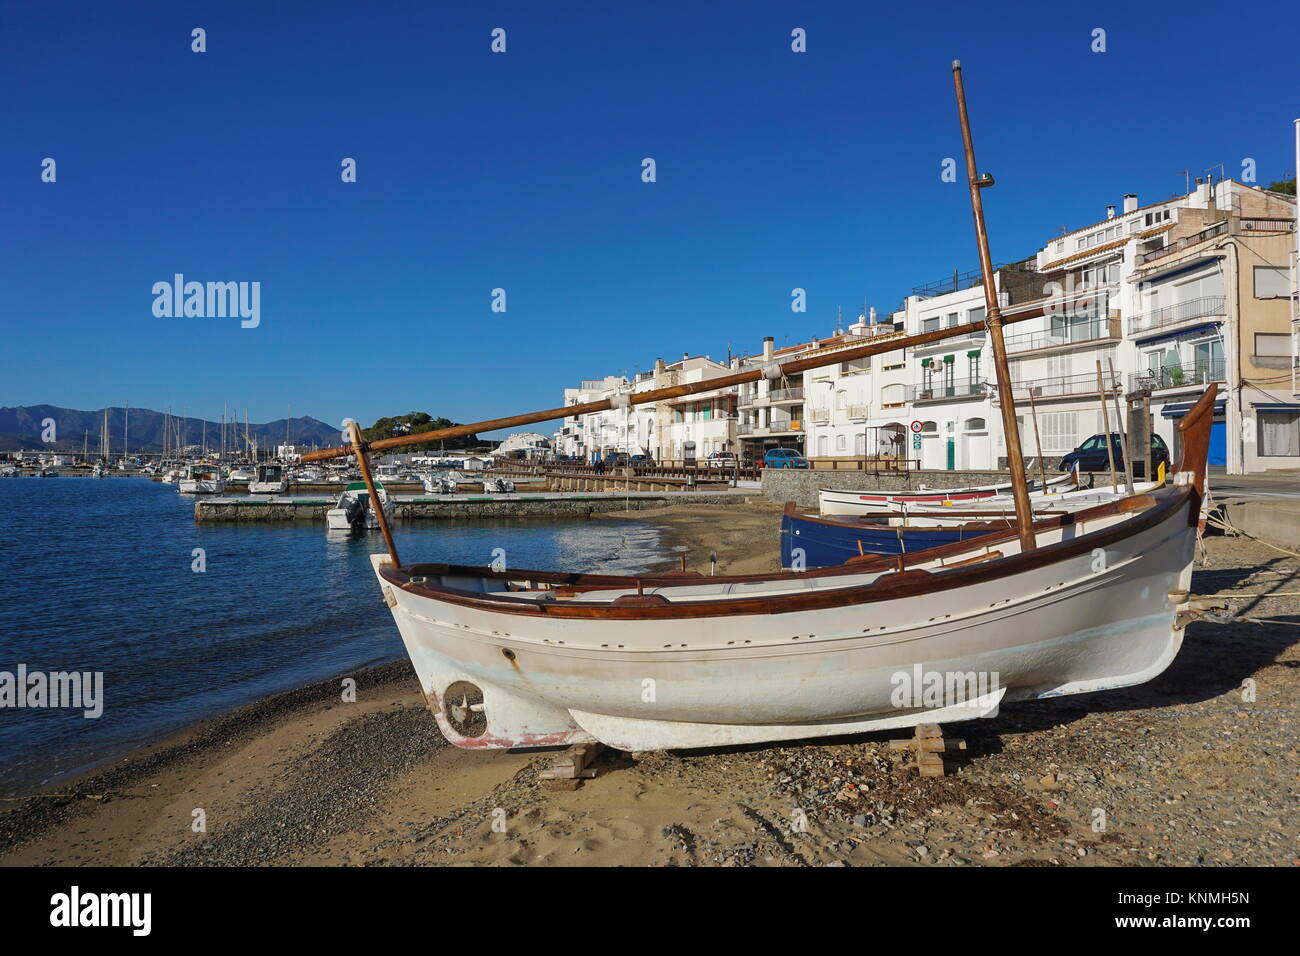 Spagna tradizionale barca da pesca sulla spiaggia, villaggio mediterraneo El Port de la Selva, Catalonia, Costa Brava, Alt Emporda Foto Stock